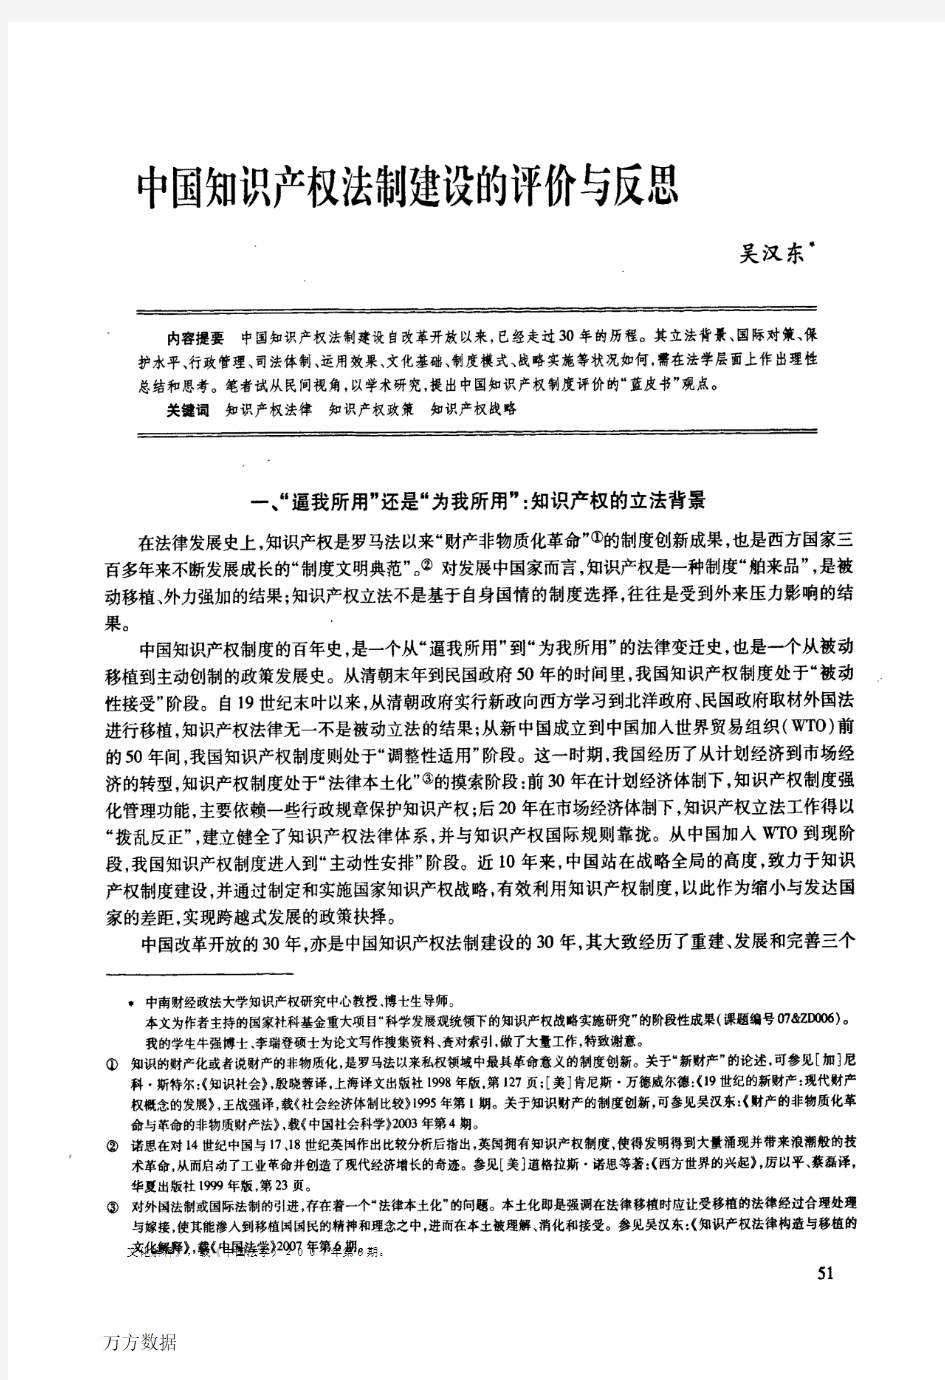 中国知识产权法制建设的评价与反思